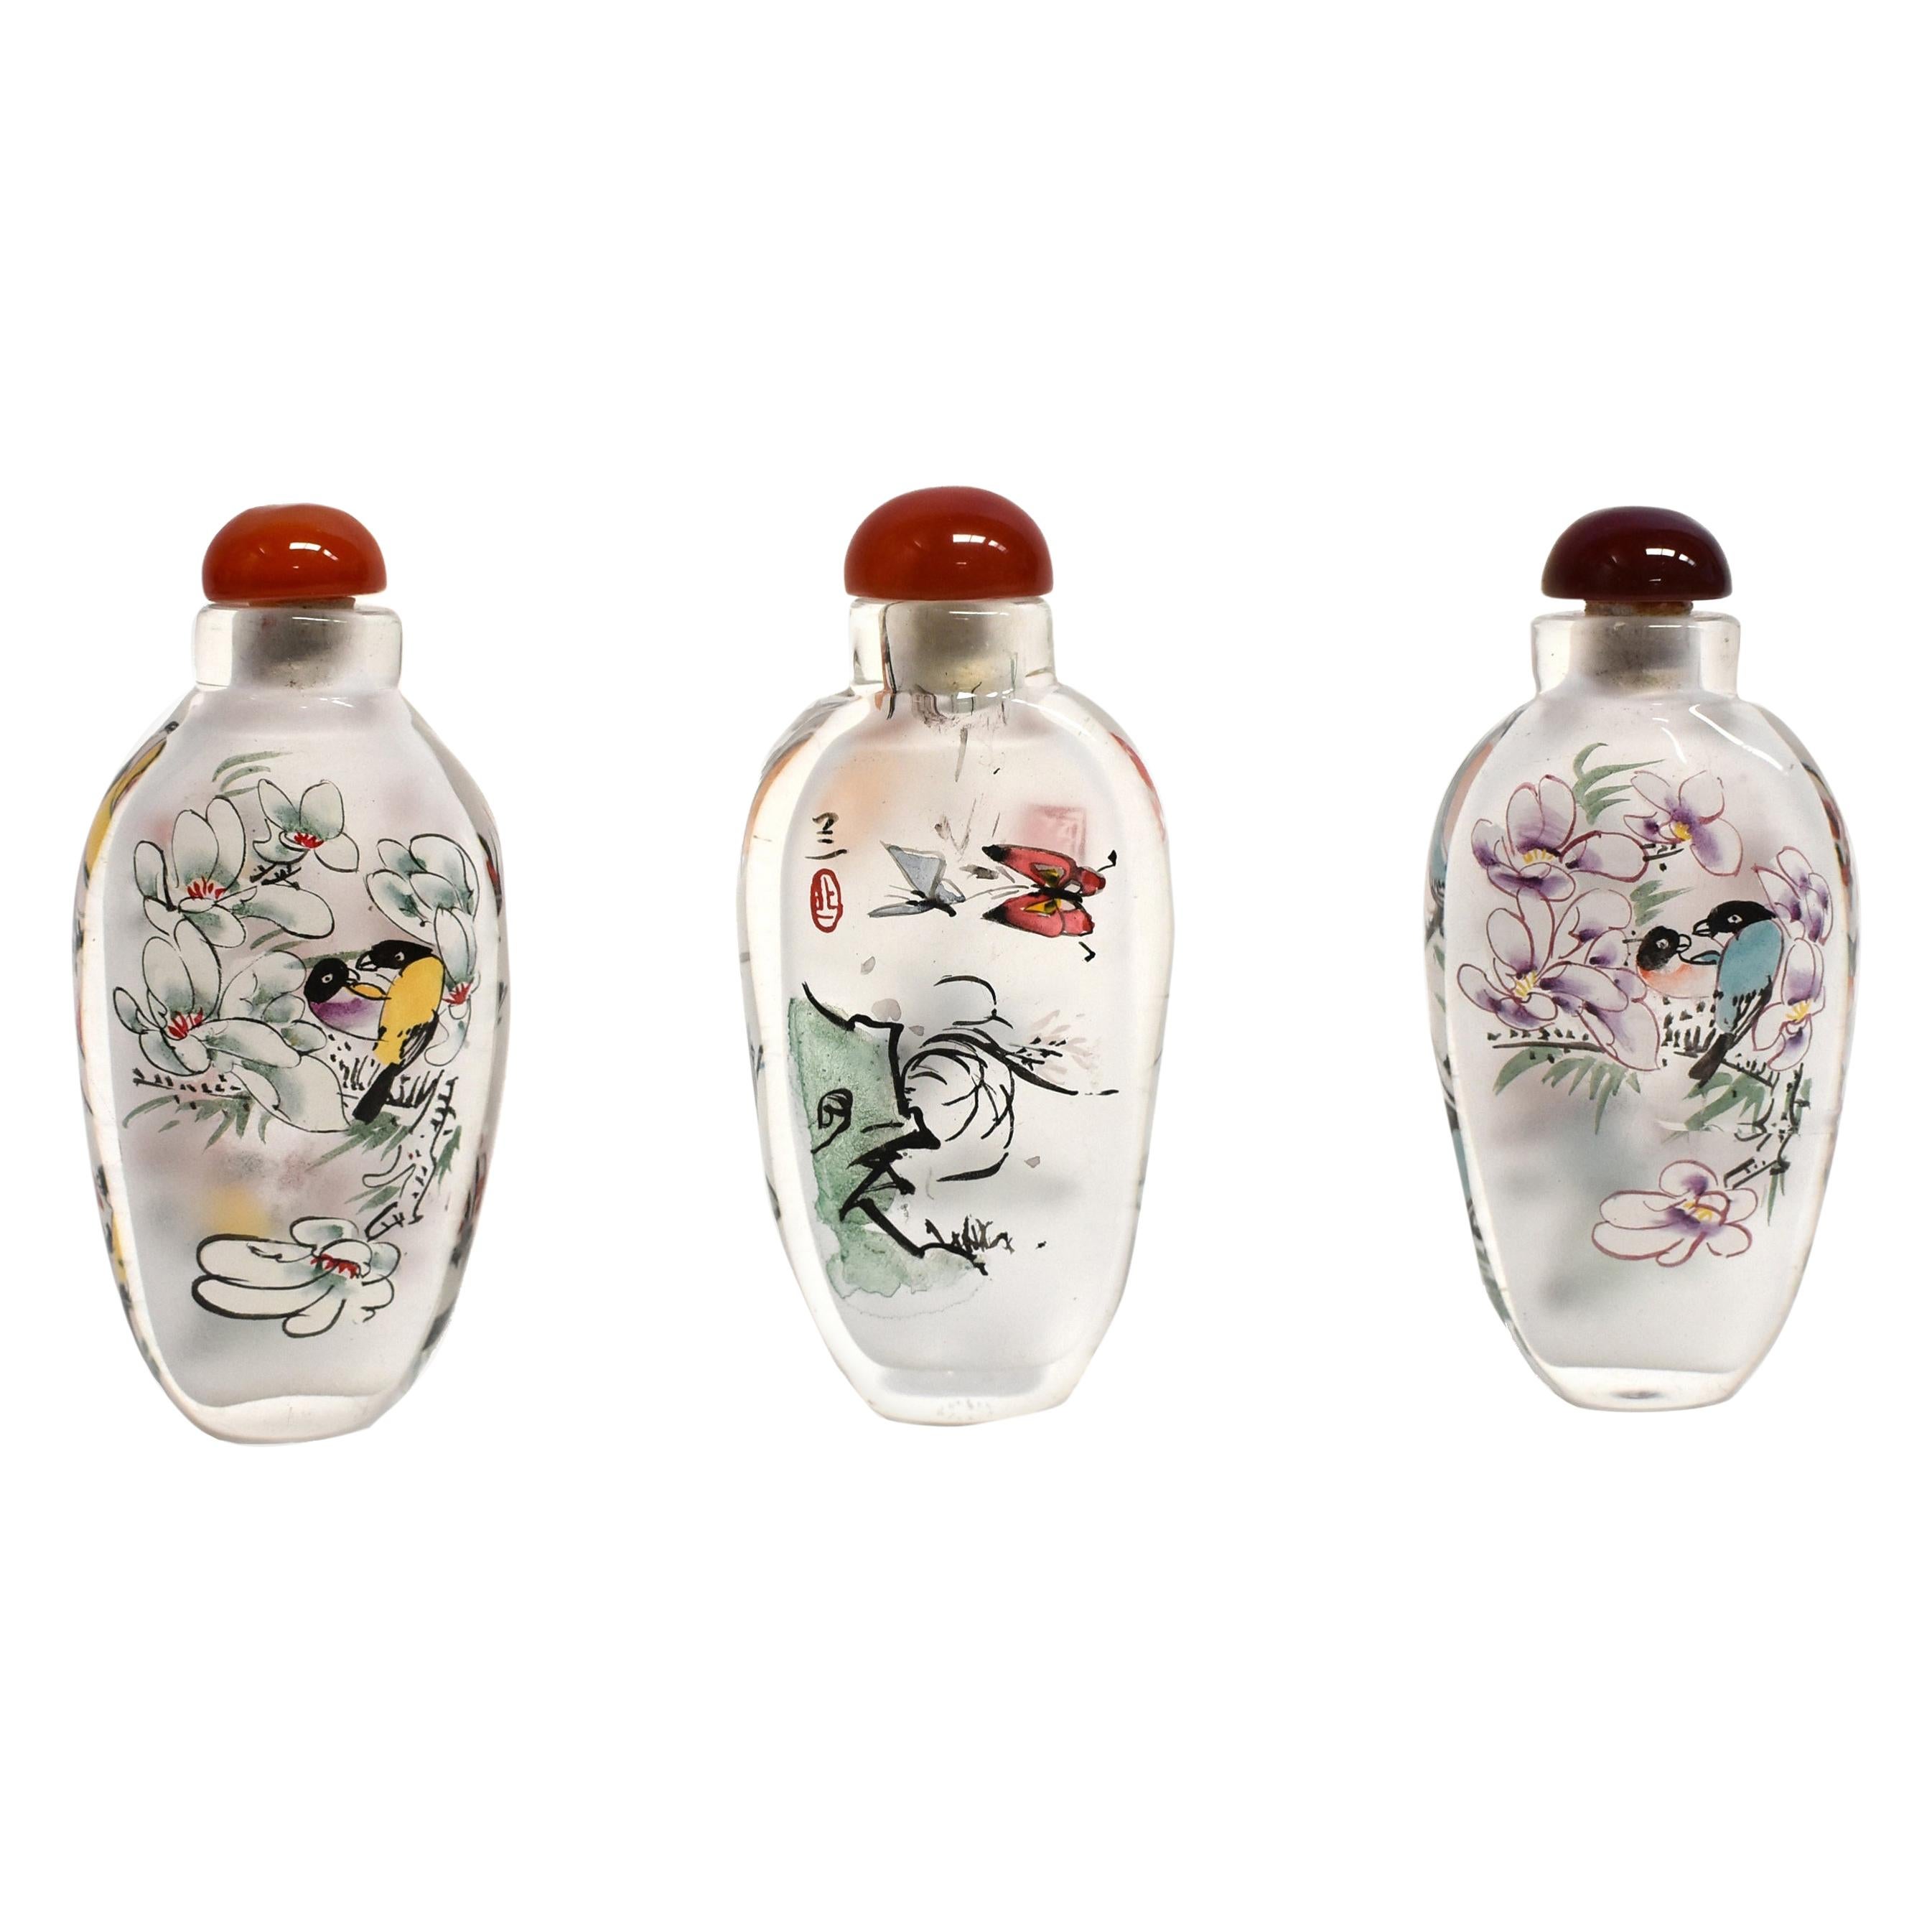 Reverse bemalte Schnupftabakflaschen mit Magnolie und Orchidee aus den Gläsern von Glomis